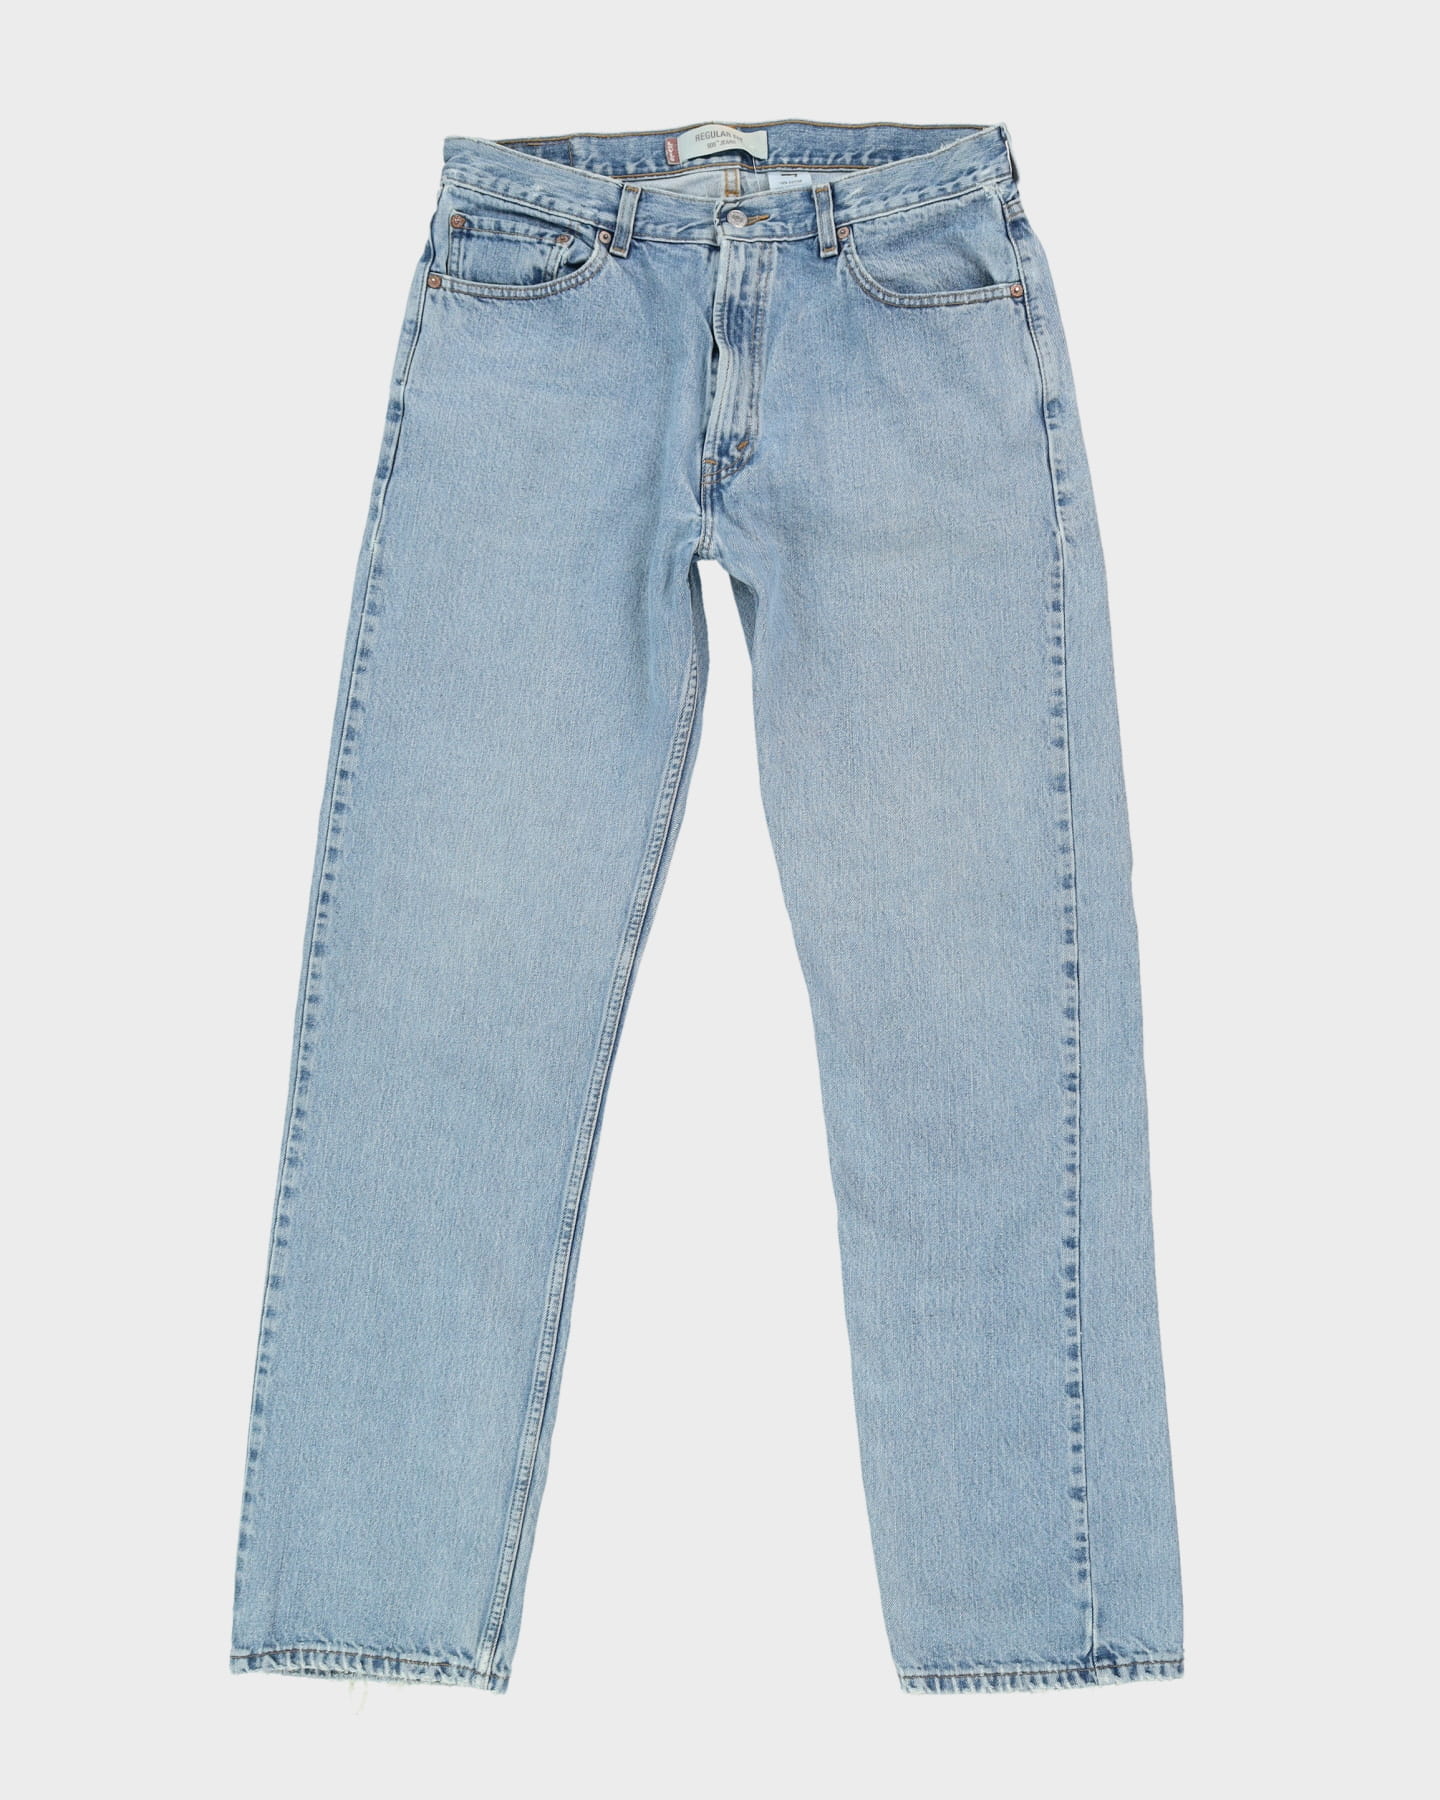 Levi's 505 Blue Jeans - W34 L34